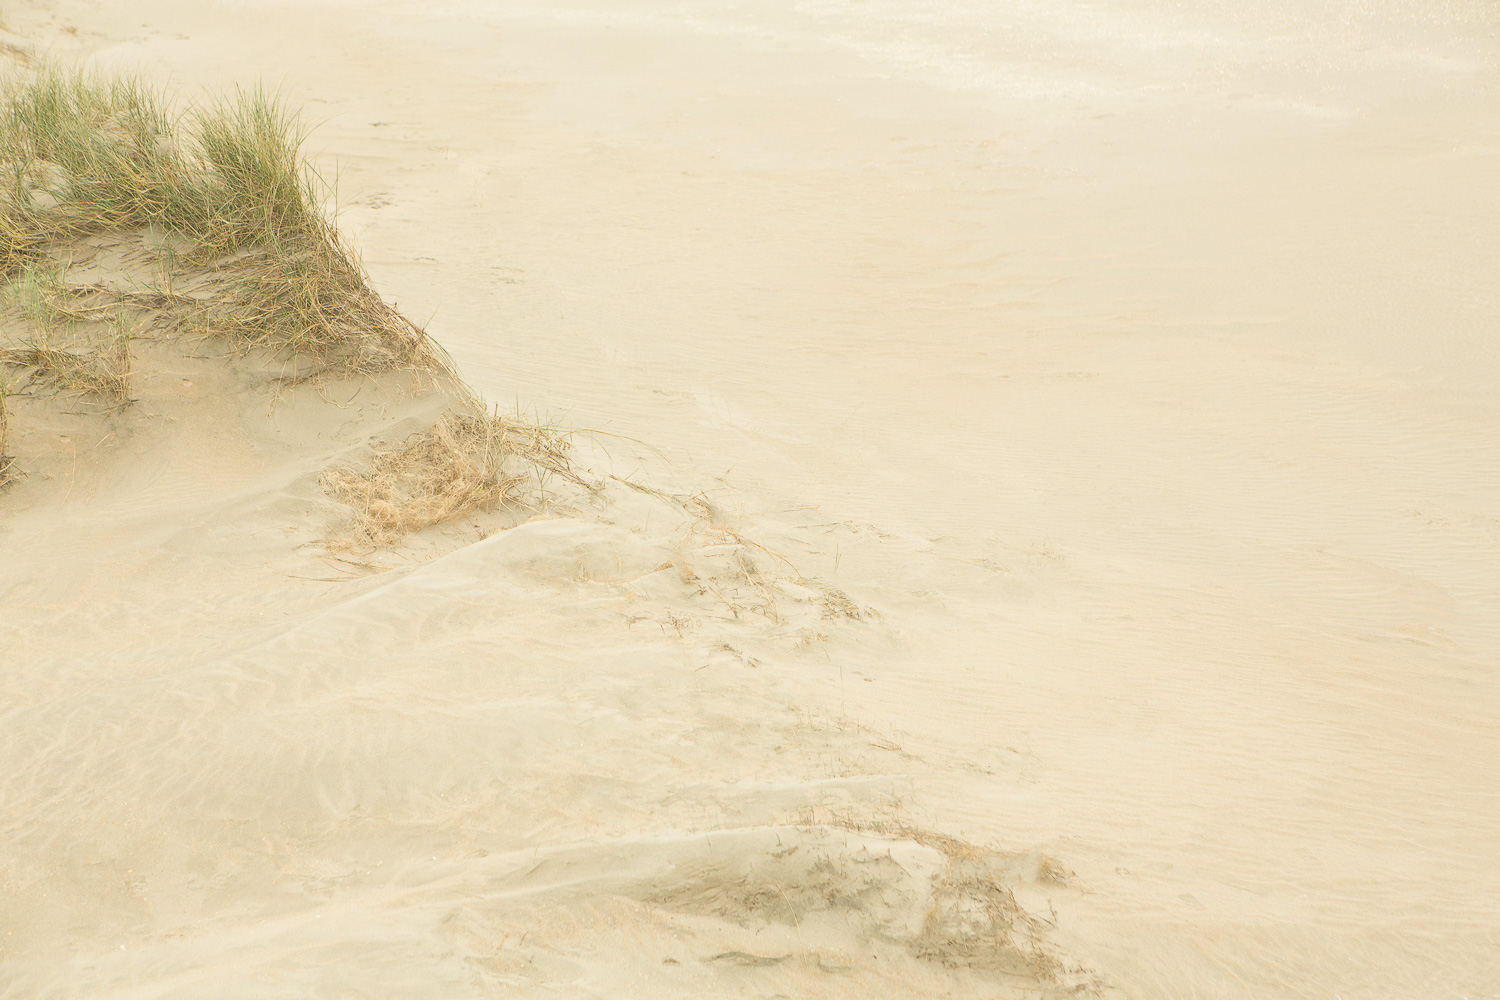  Dunes I, 2016 //  120 x 180 cm  